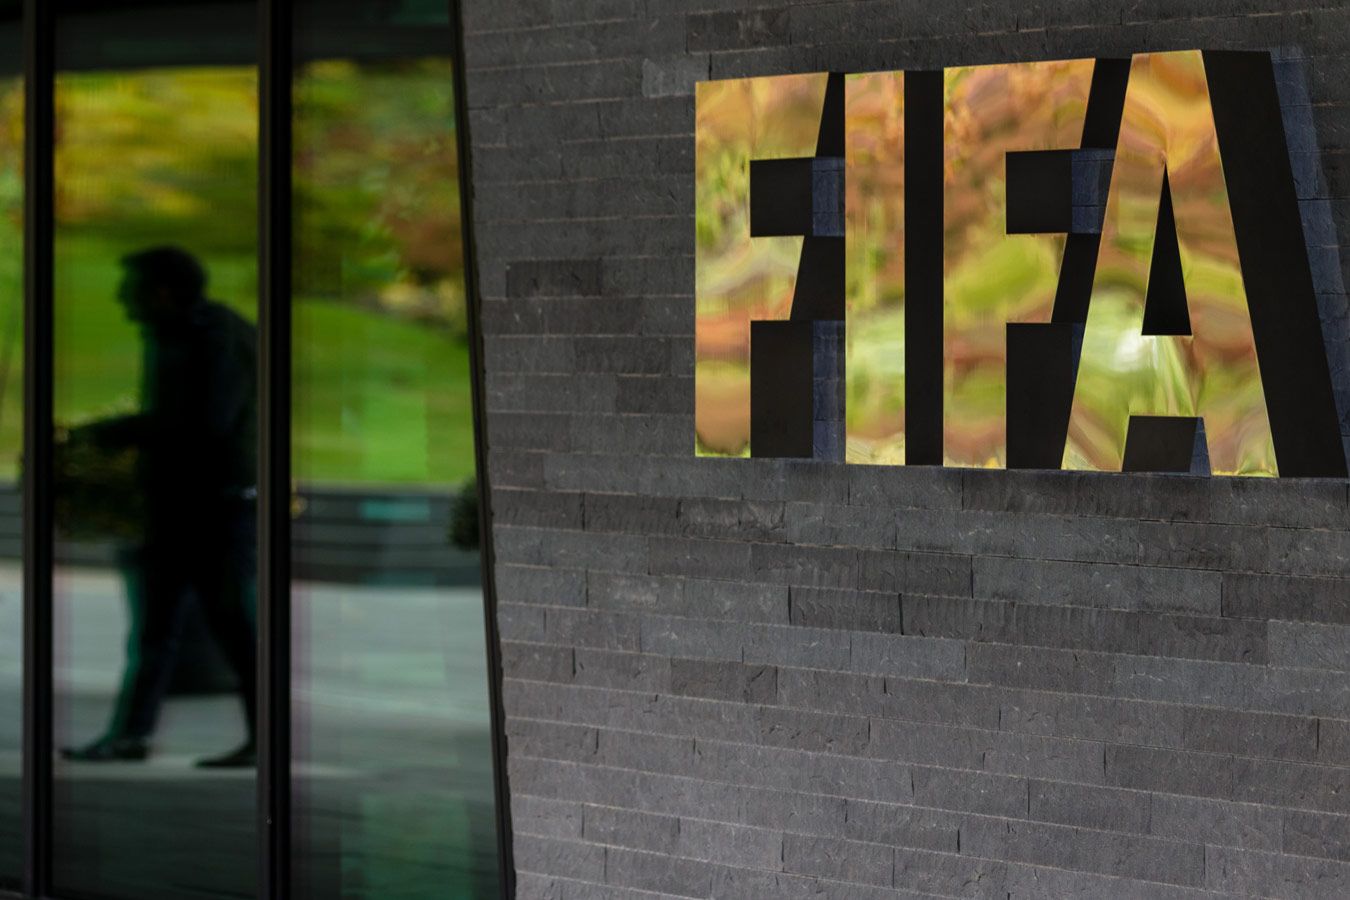 ФИФА усилит меры борьбы с разжиганием ненависти по отношению к игрокам в социальных сетях